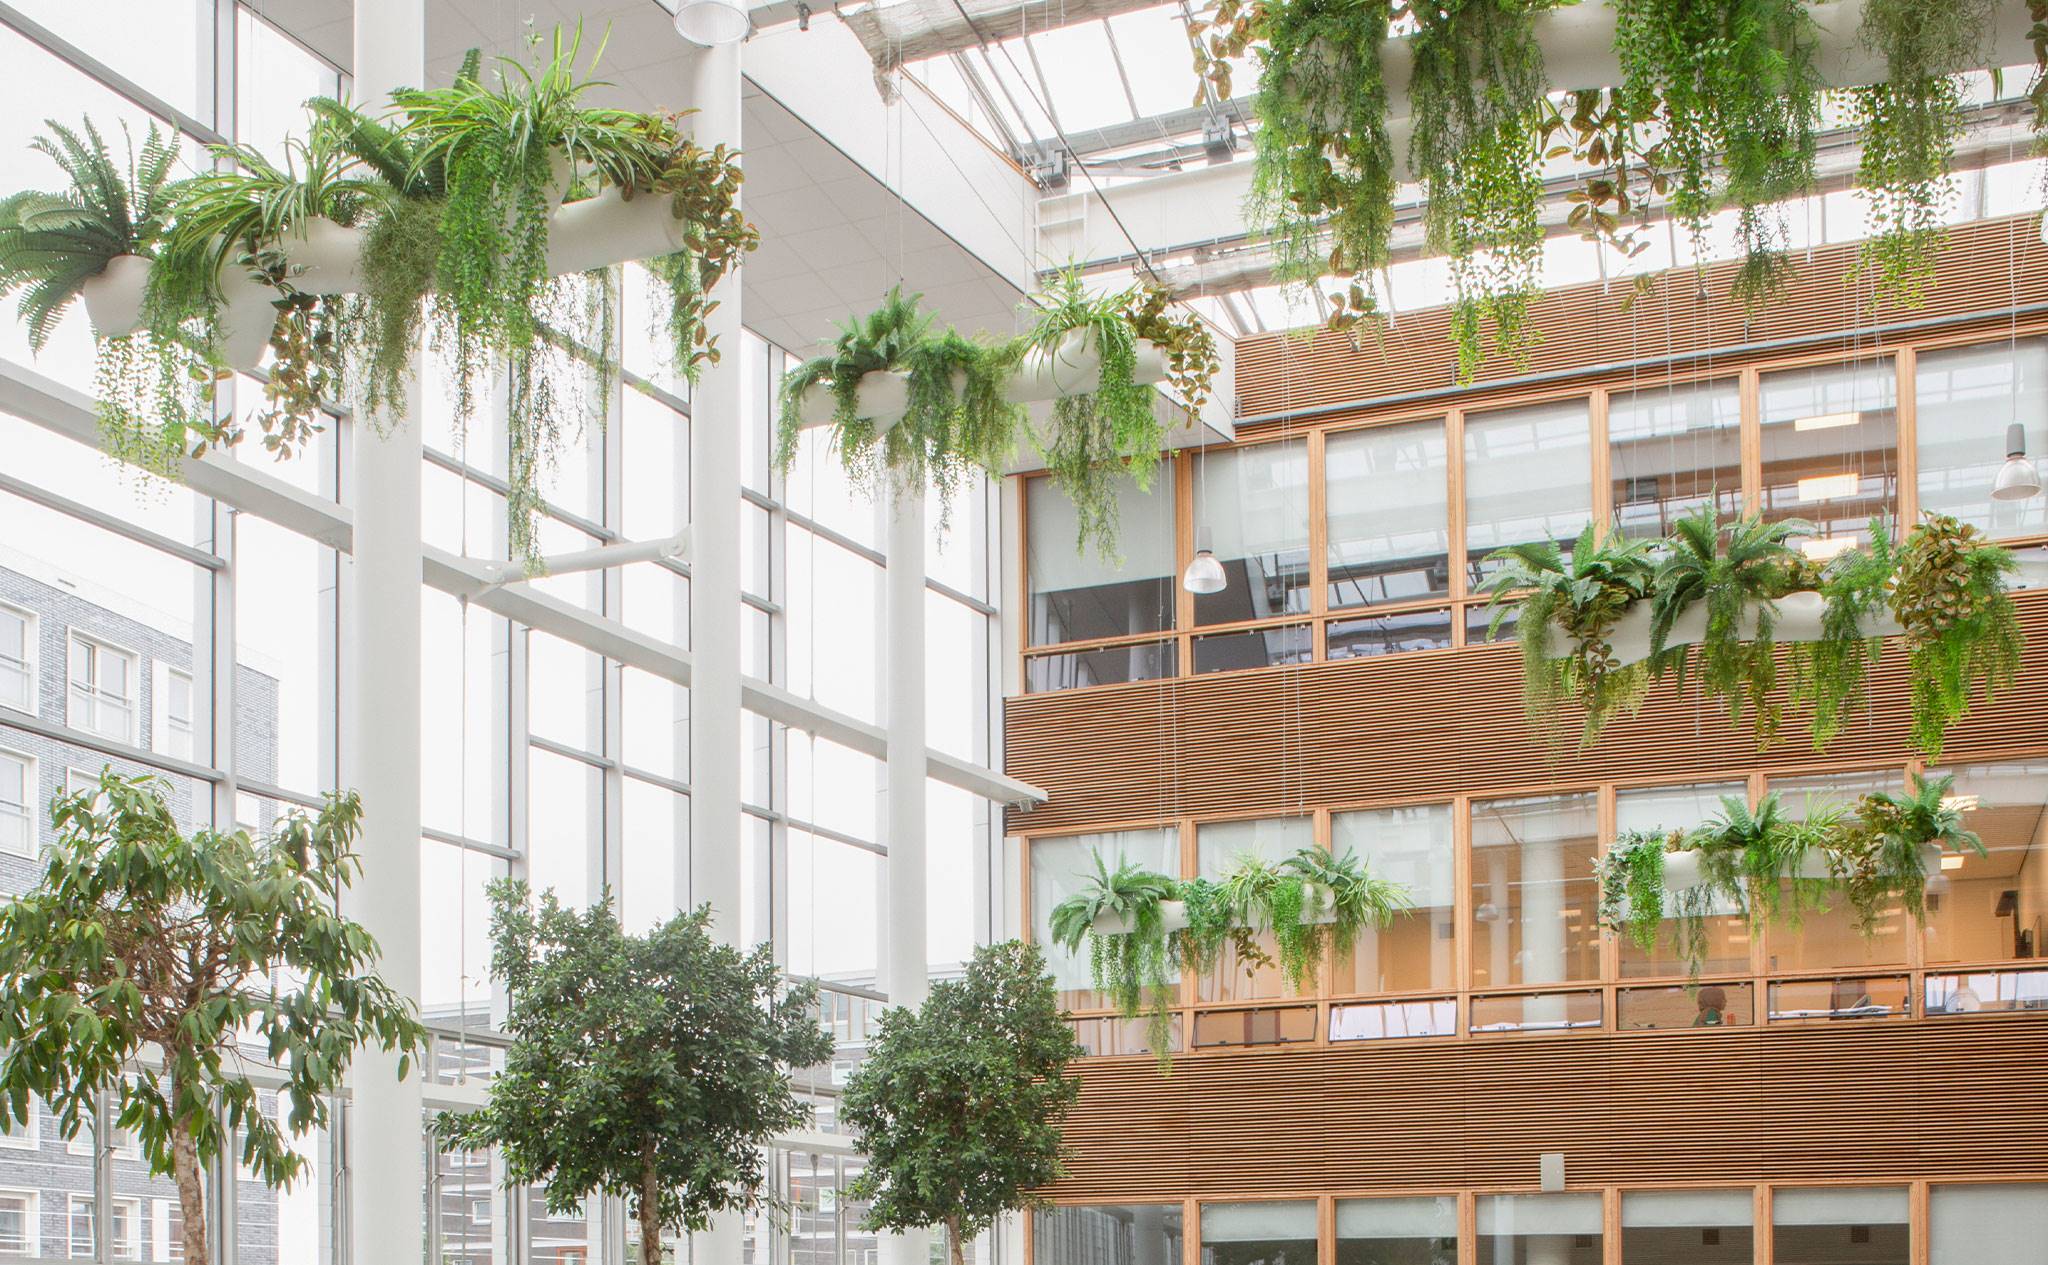 Hogeschool van Amsterdam, Fraijlemaborg - We hebben dit groen aangelegd op deze school met als achterliggende gedachte om de leerprestaties van de studenten te verbeteren.